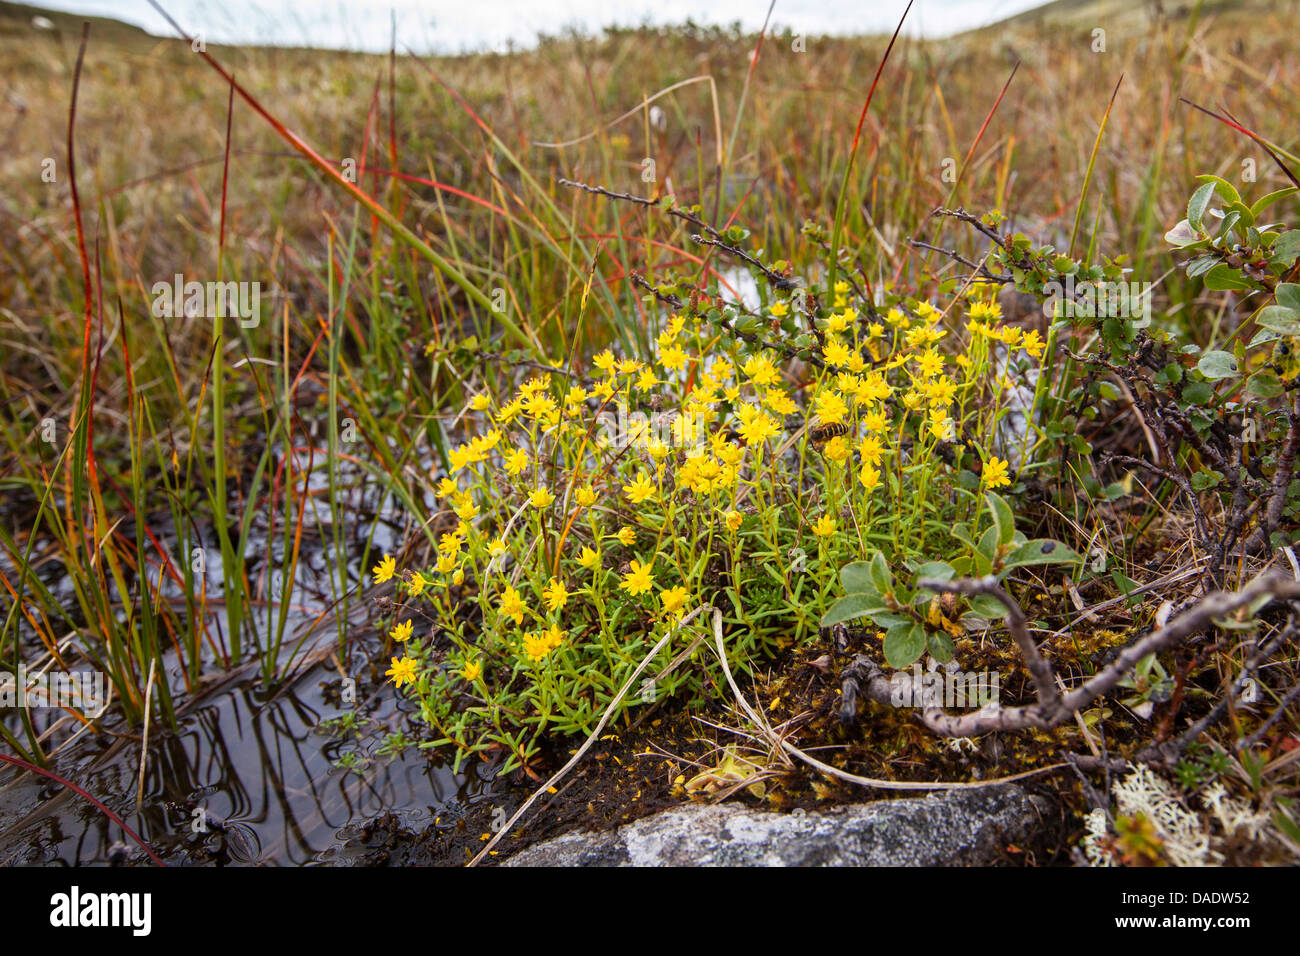 yellow saxifrage, yellow mountain saxifrage, evergreen saxifrage (Saxifraga aizoides), blooming, Norway, Dovrefjell Sunndalsfjella National Park Stock Photo